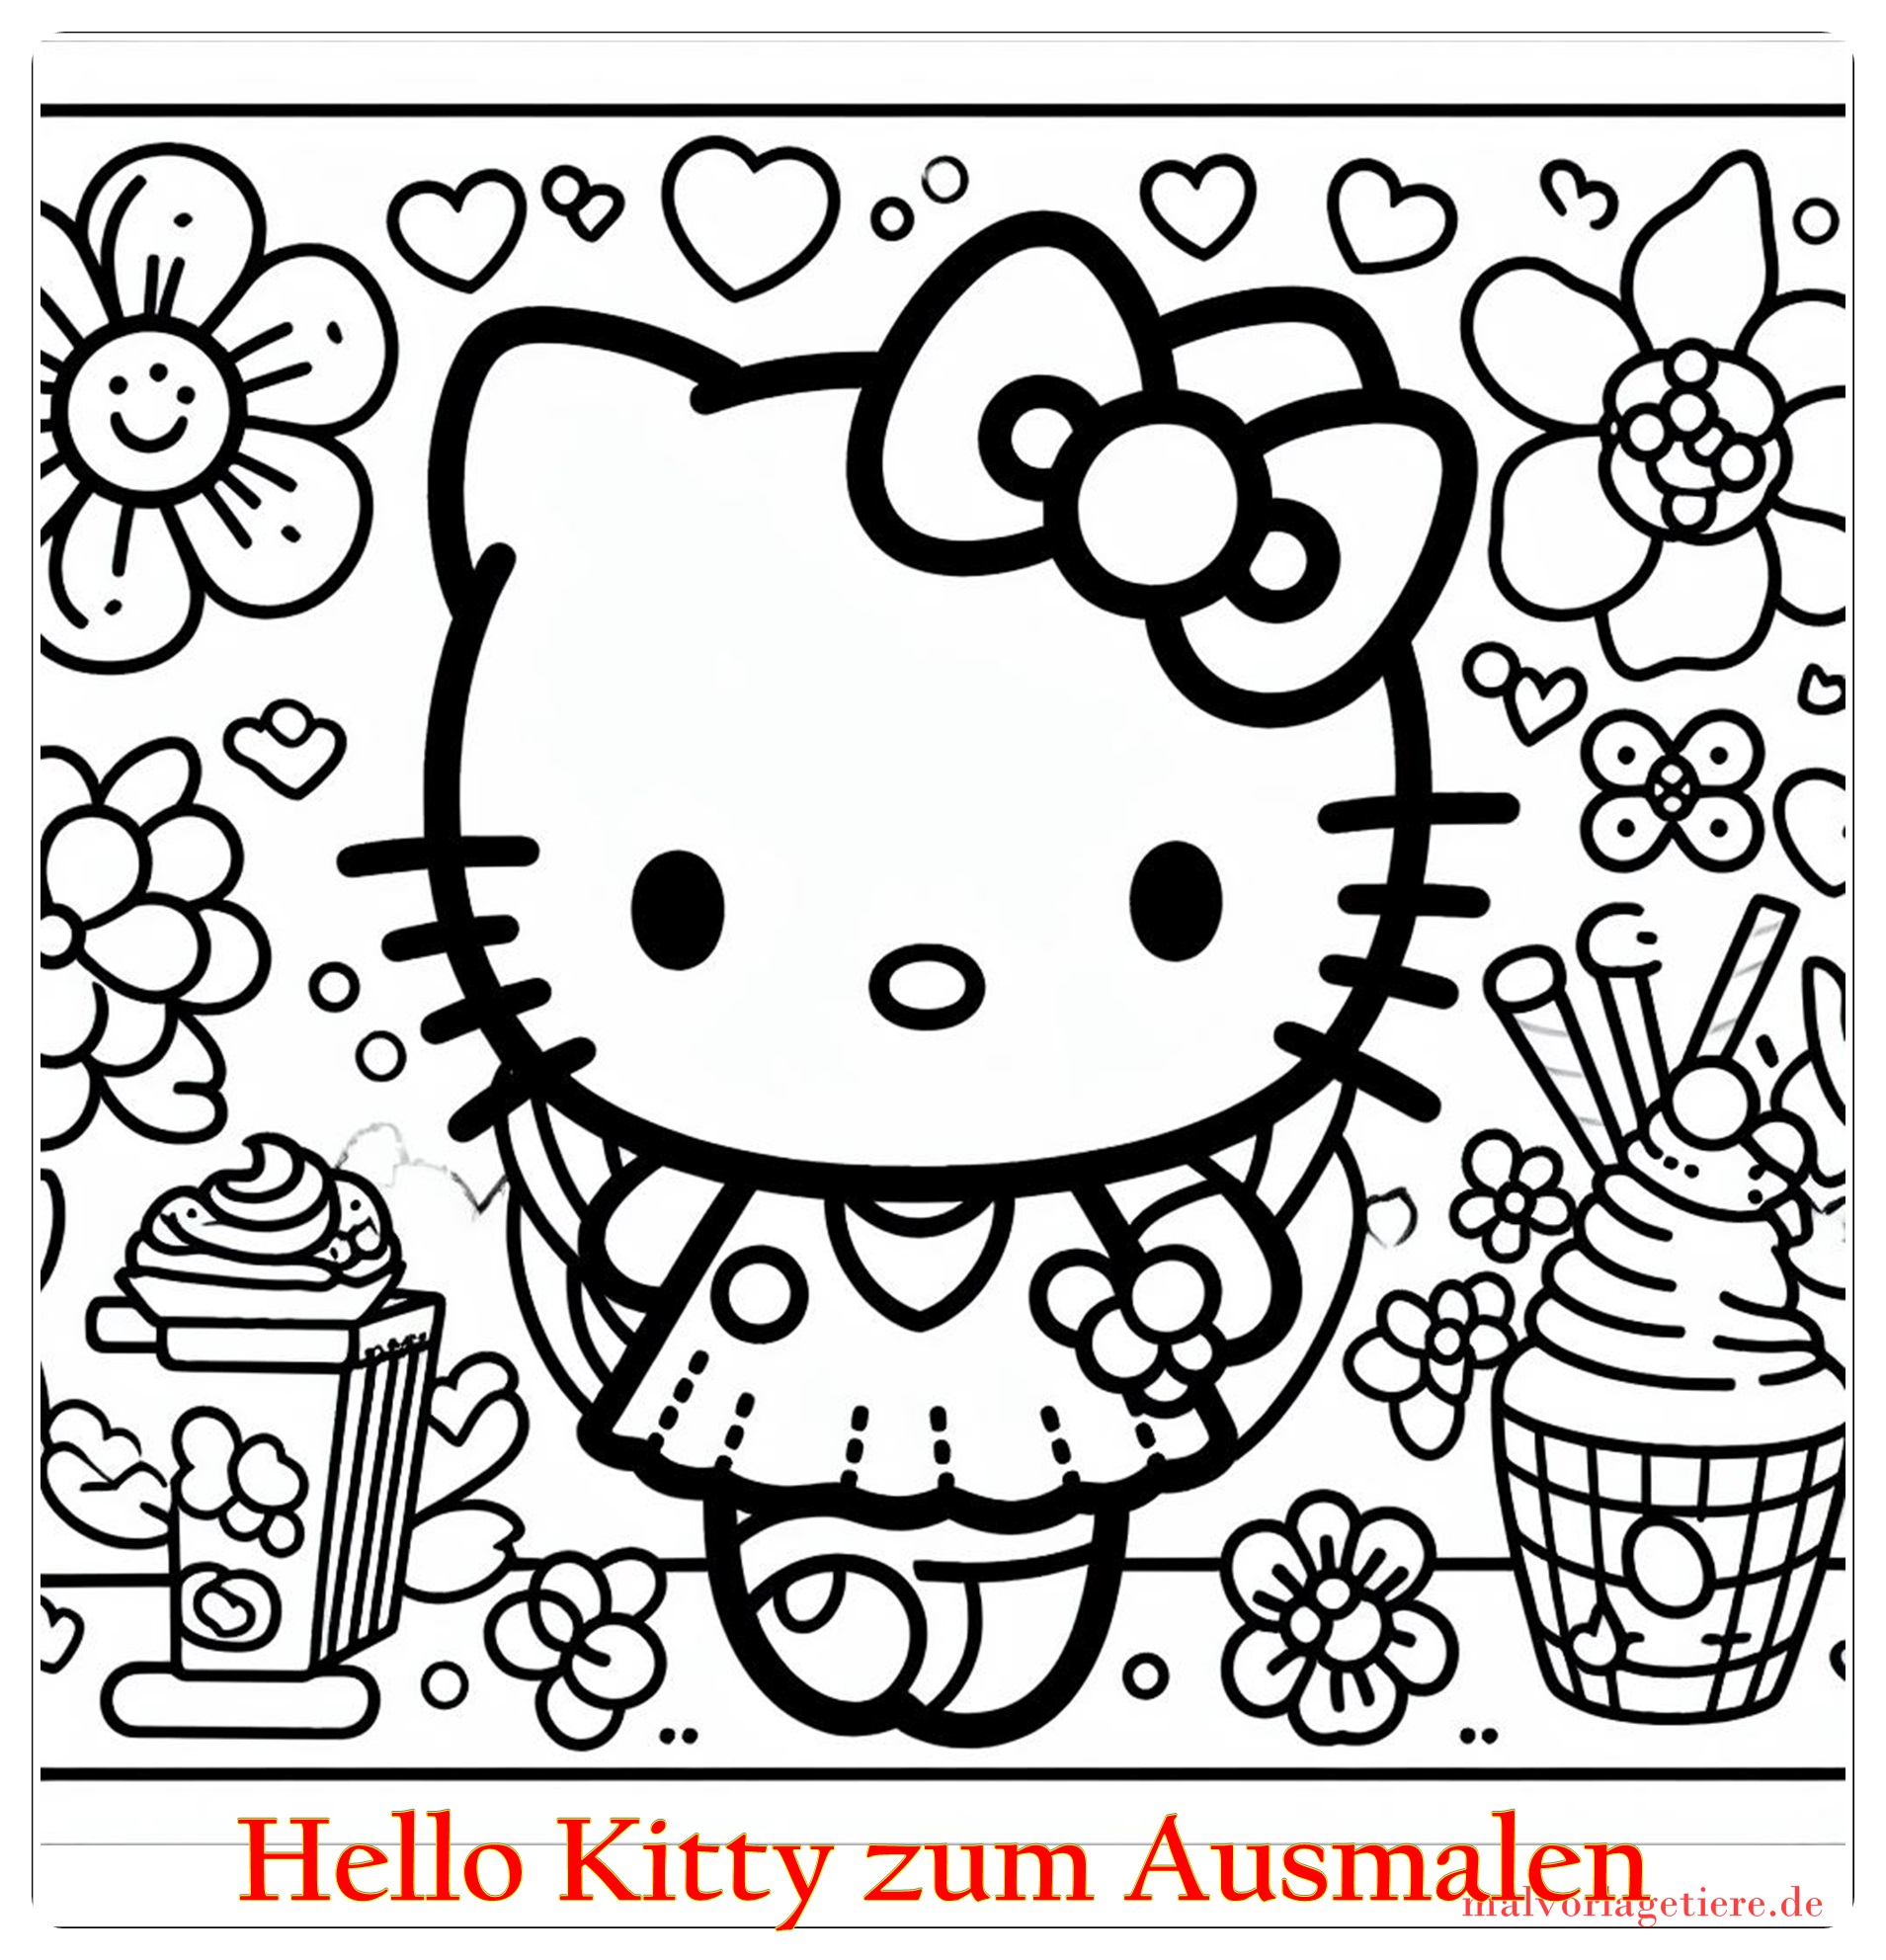 Hello Kitty zum Ausmalen 07 by malvorlagetiere